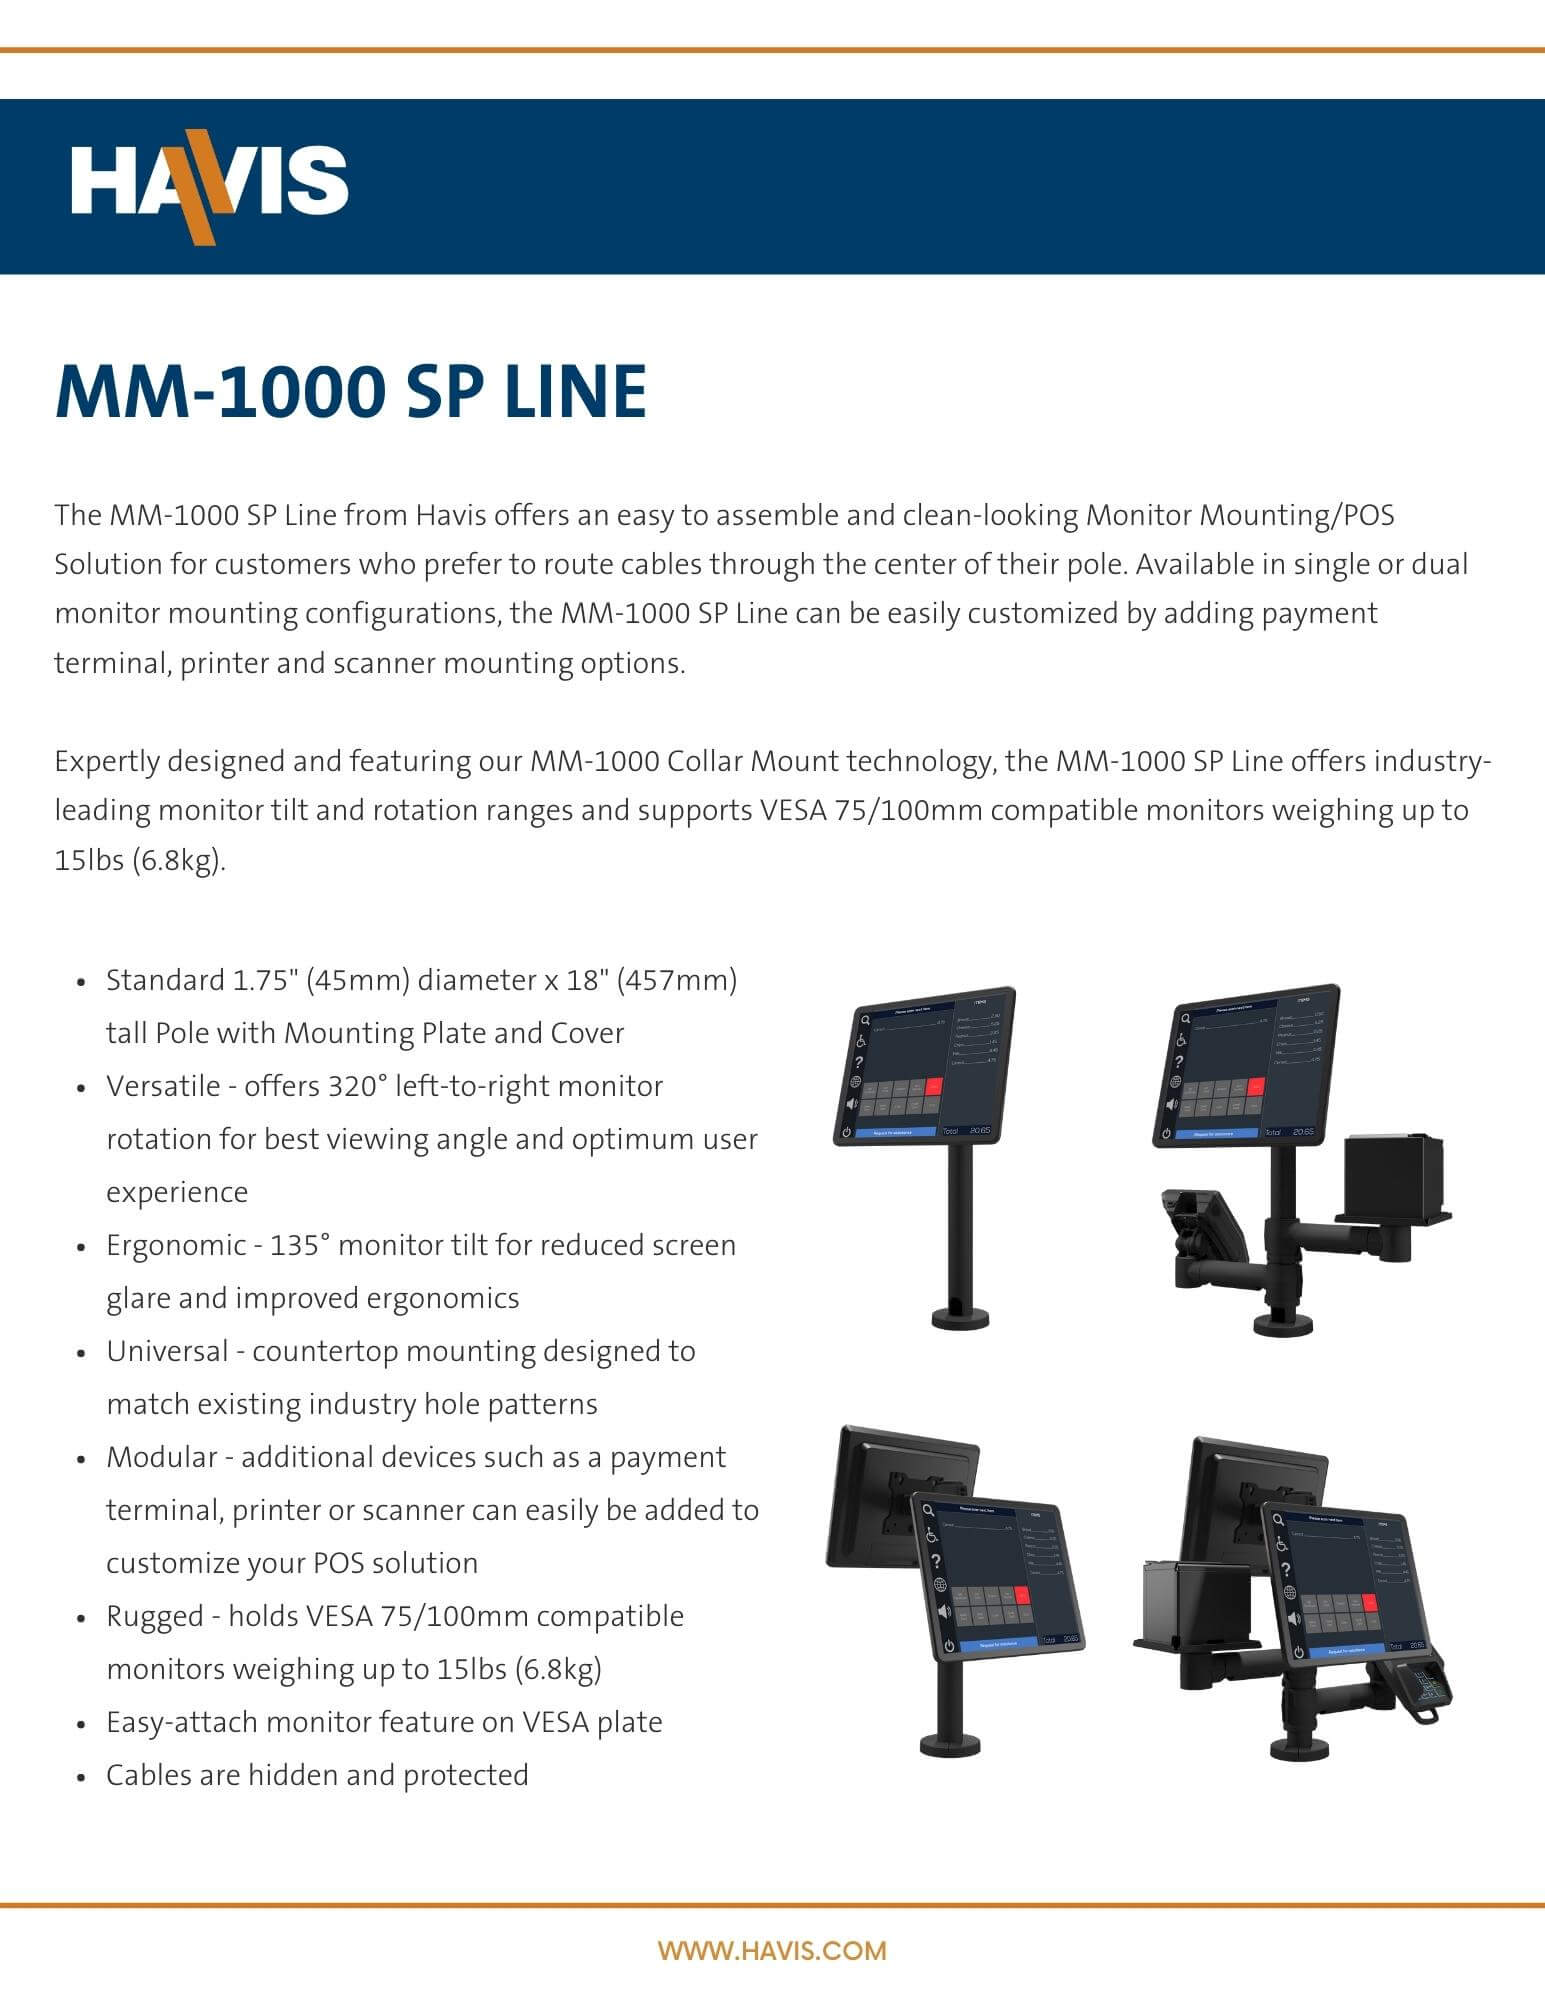 MM-1000 SP Line - Data Sheet